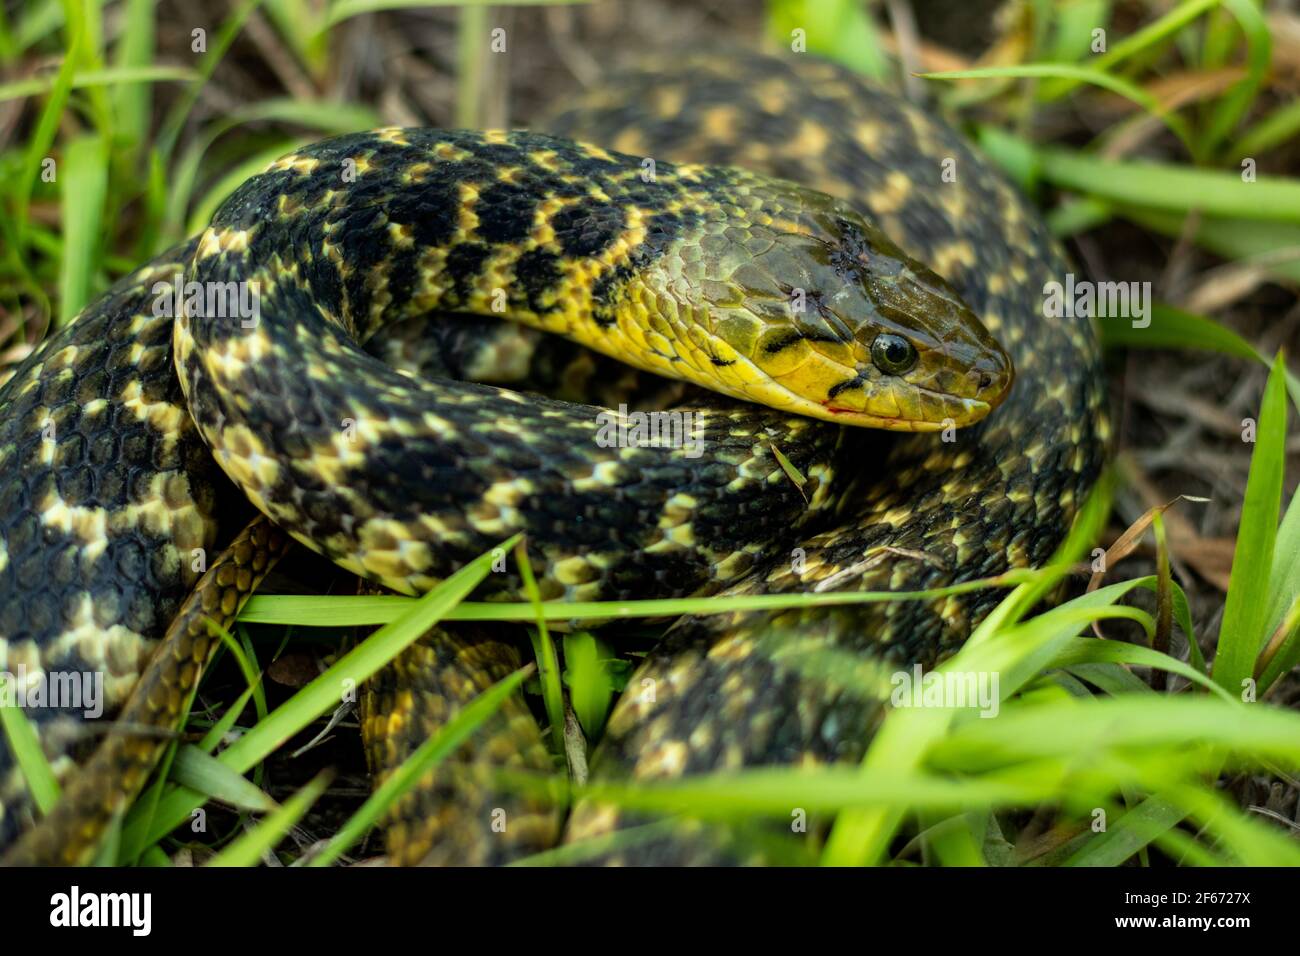 El buff a rayas keelback o Anfiesma stolatum serpiente es un Especies de  serpientes colubrid no venenosas que se encuentran en toda Asia y sentados  en la hierba verde mira Fotografía de